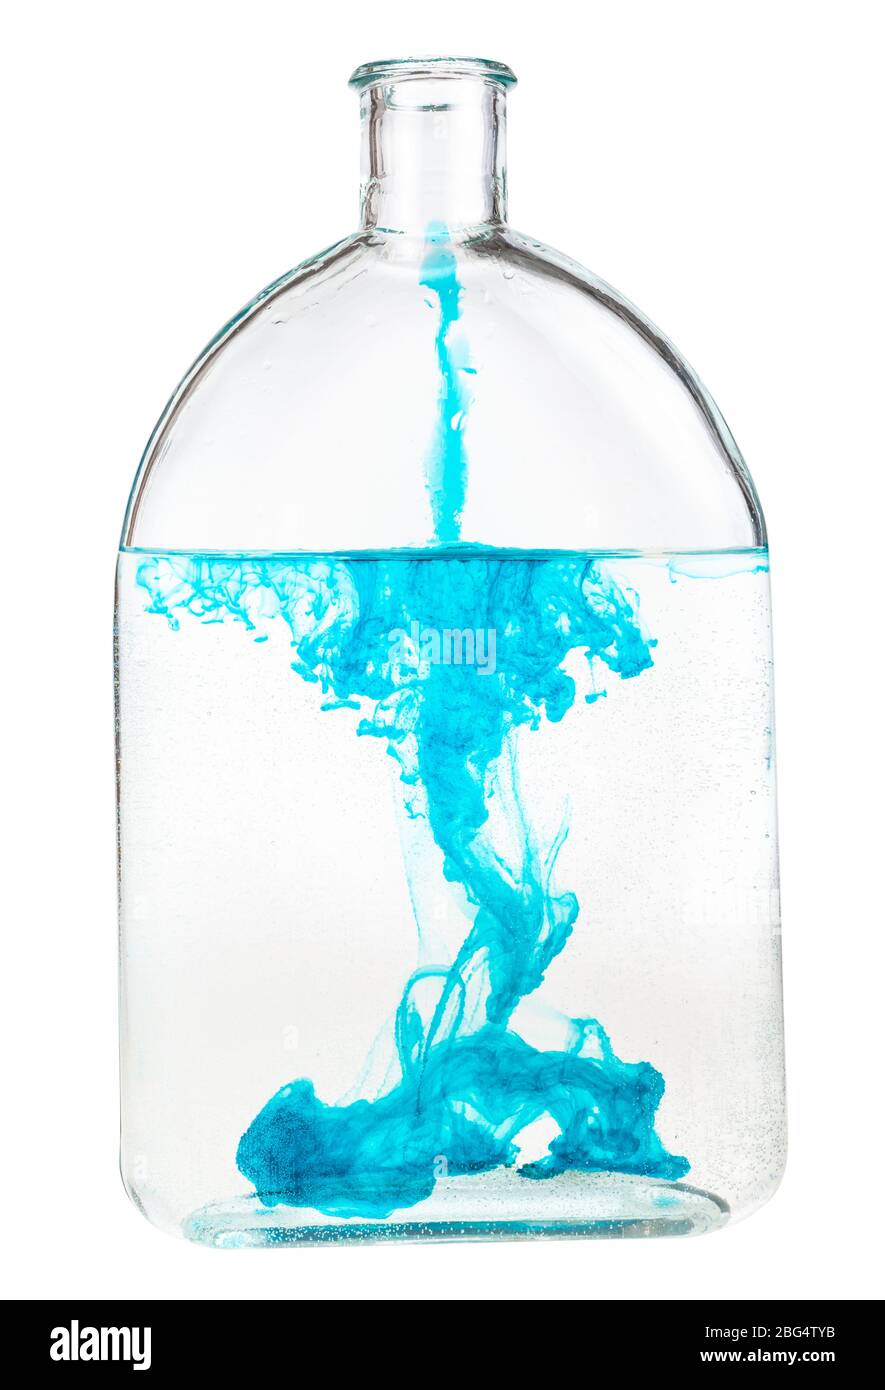 l'inchiostro blu si dissolve in acqua in bottiglia isolata su sfondo bianco Foto Stock